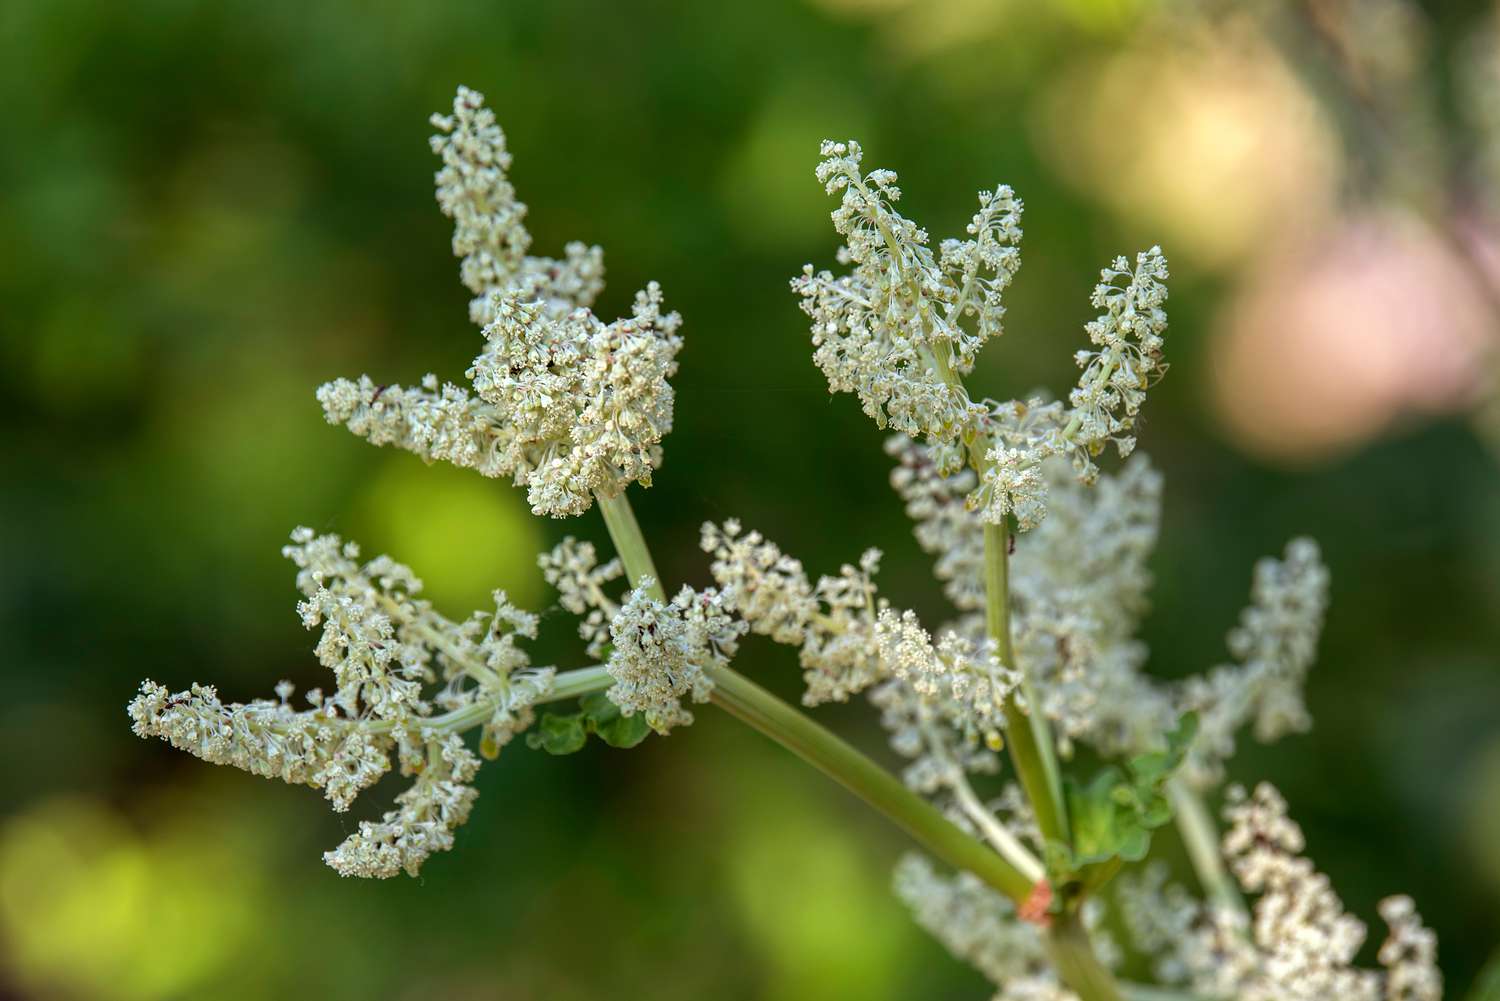 Planta de ruibarbo com pequenas flores brancas agrupadas nas extremidades do caule em close-up